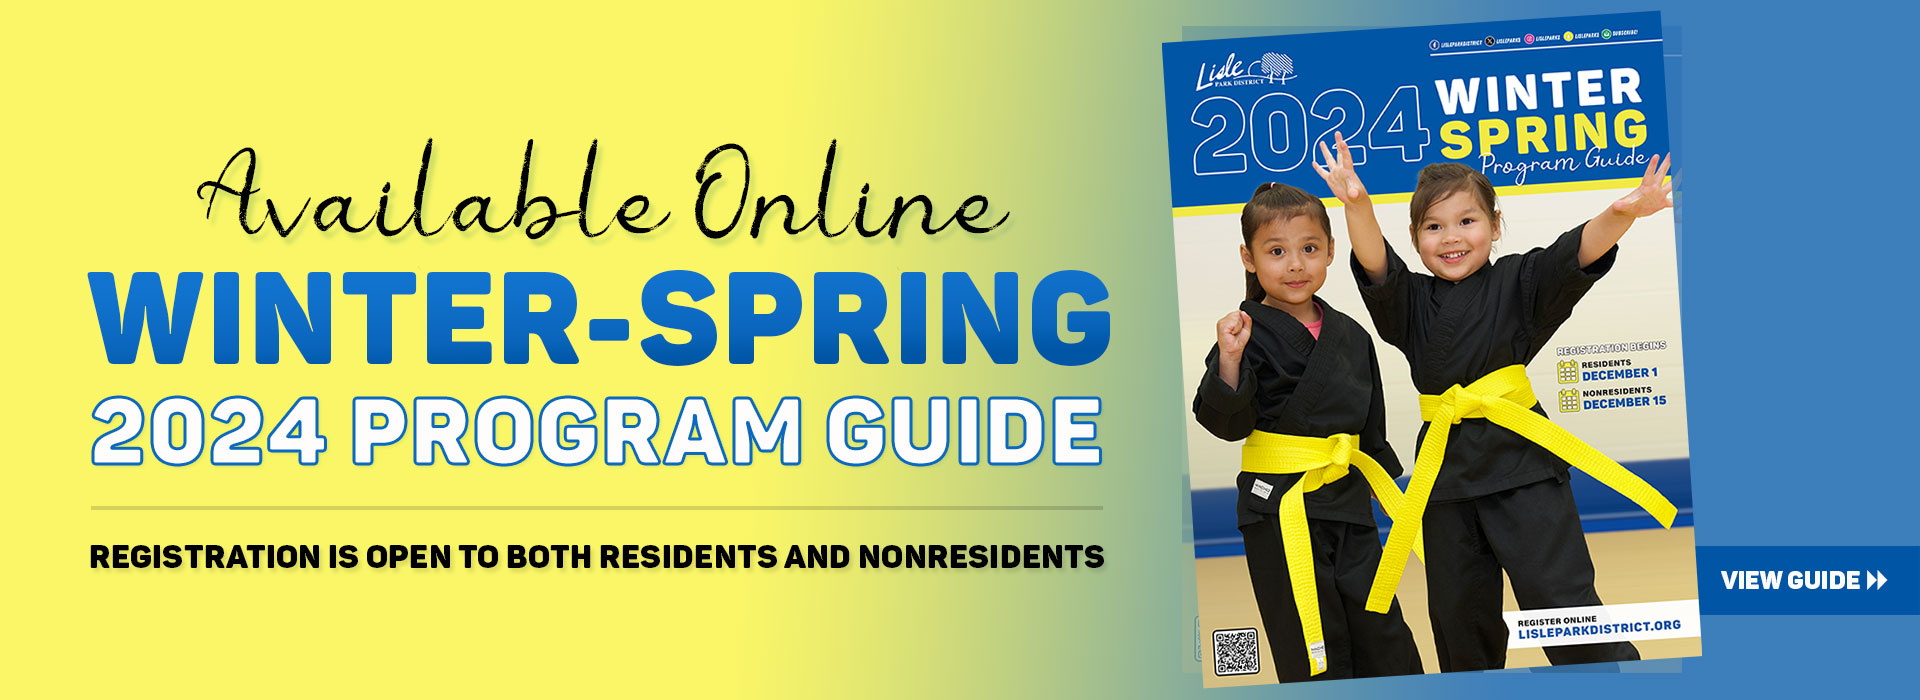 2024 Winter-Spring Program Guide